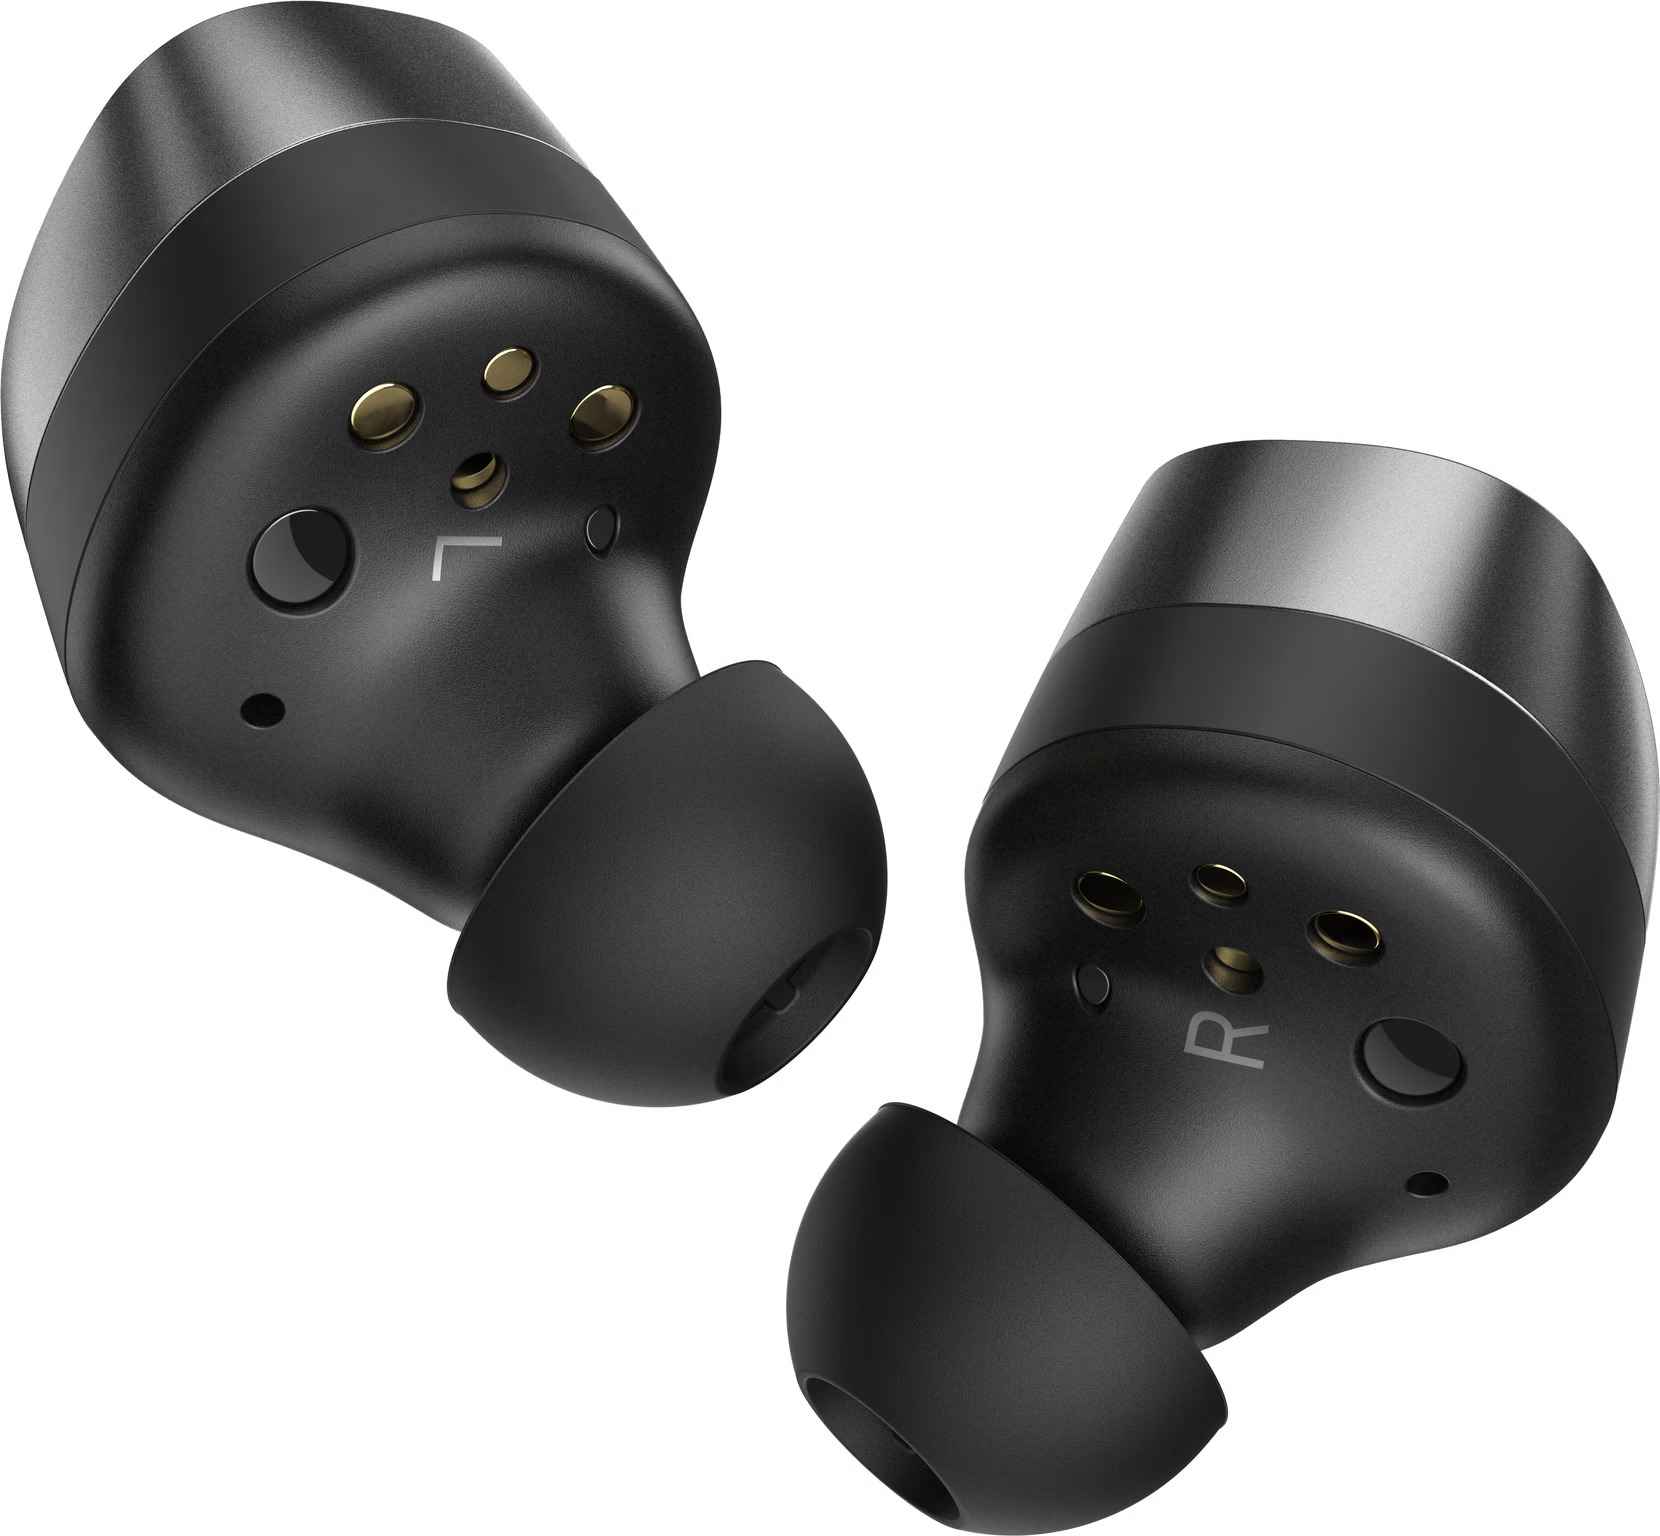 Sennheiser Momentum True Wireless 3 grafiet - In ear oordopjes